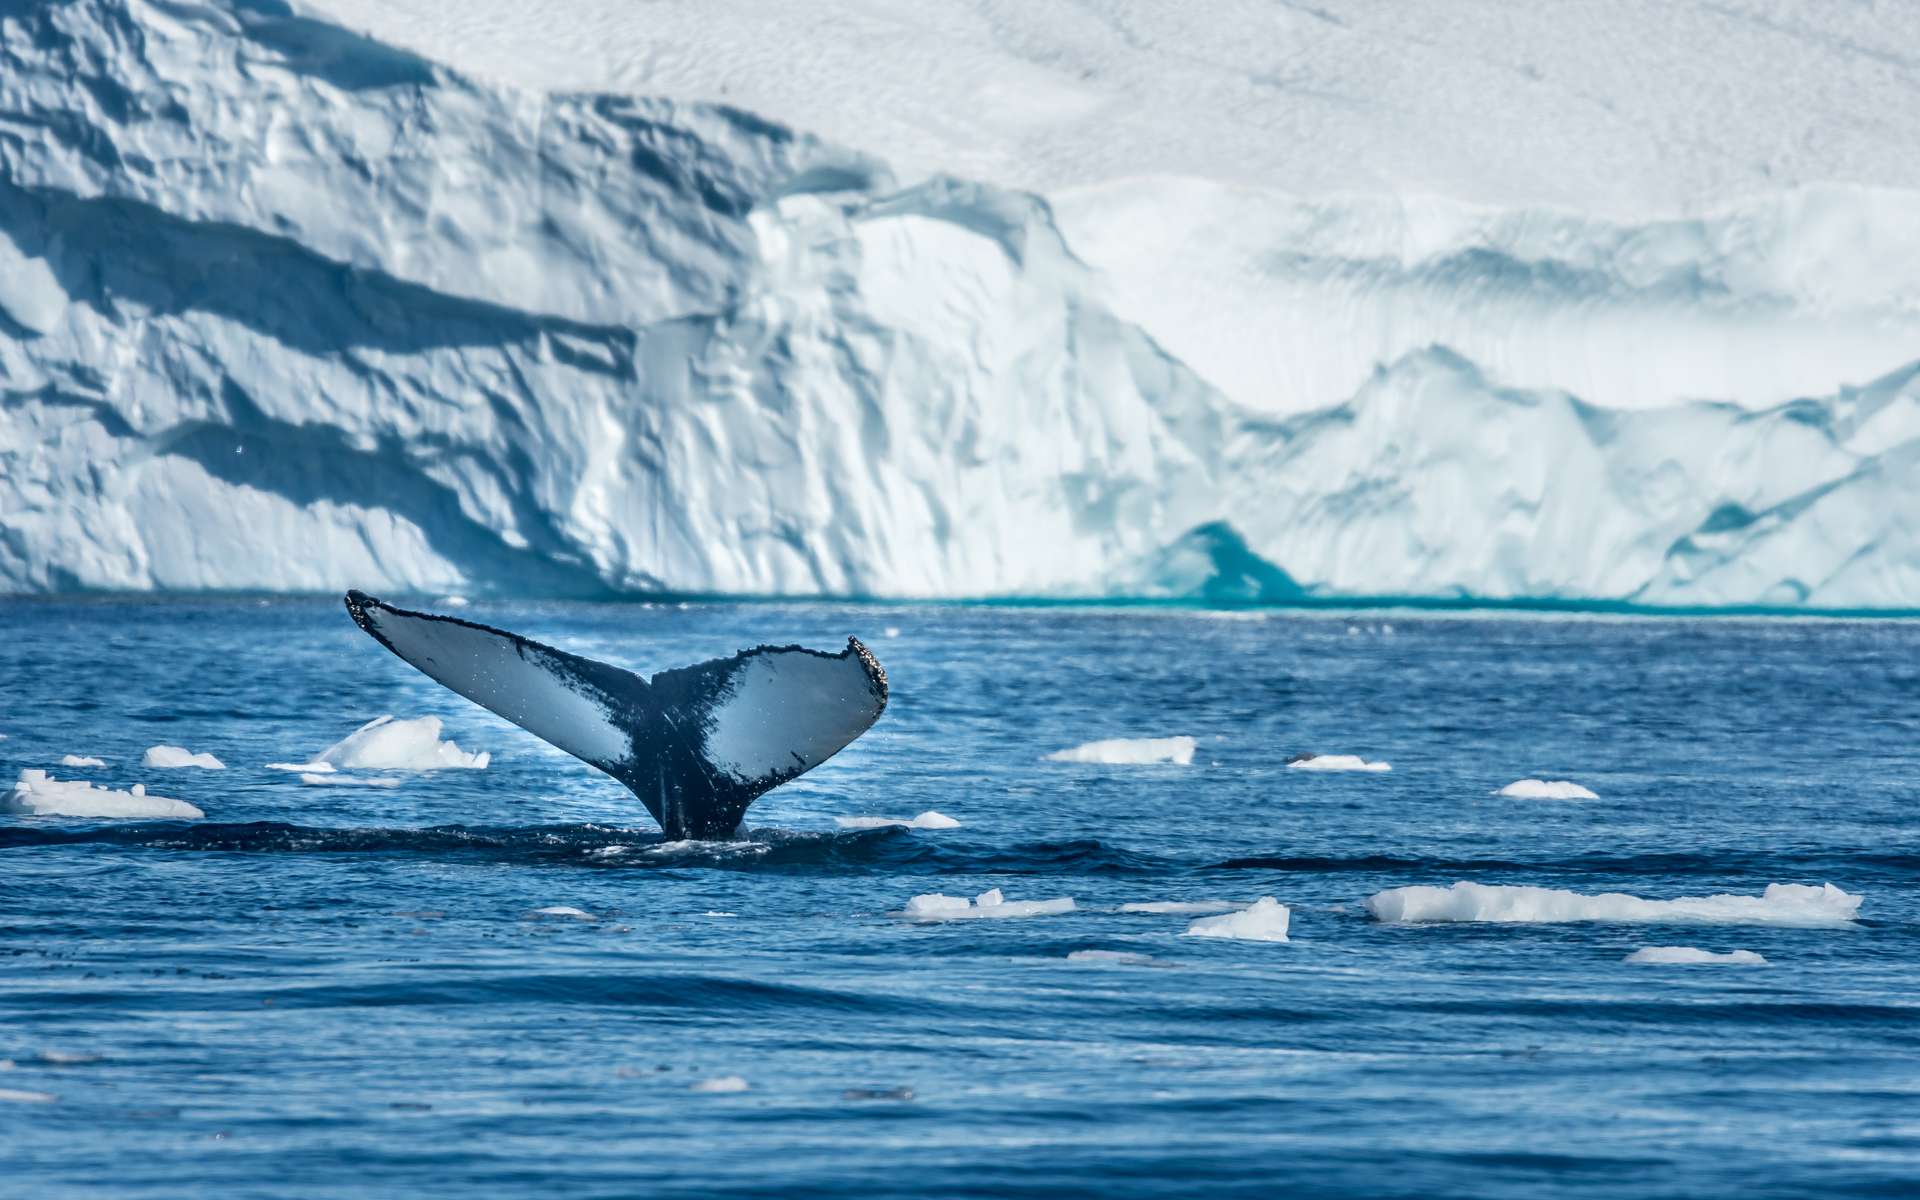 Le Groenland fond à vue d'oeil : plusieurs milliards de tonnes de glace disparaissent chaque jour